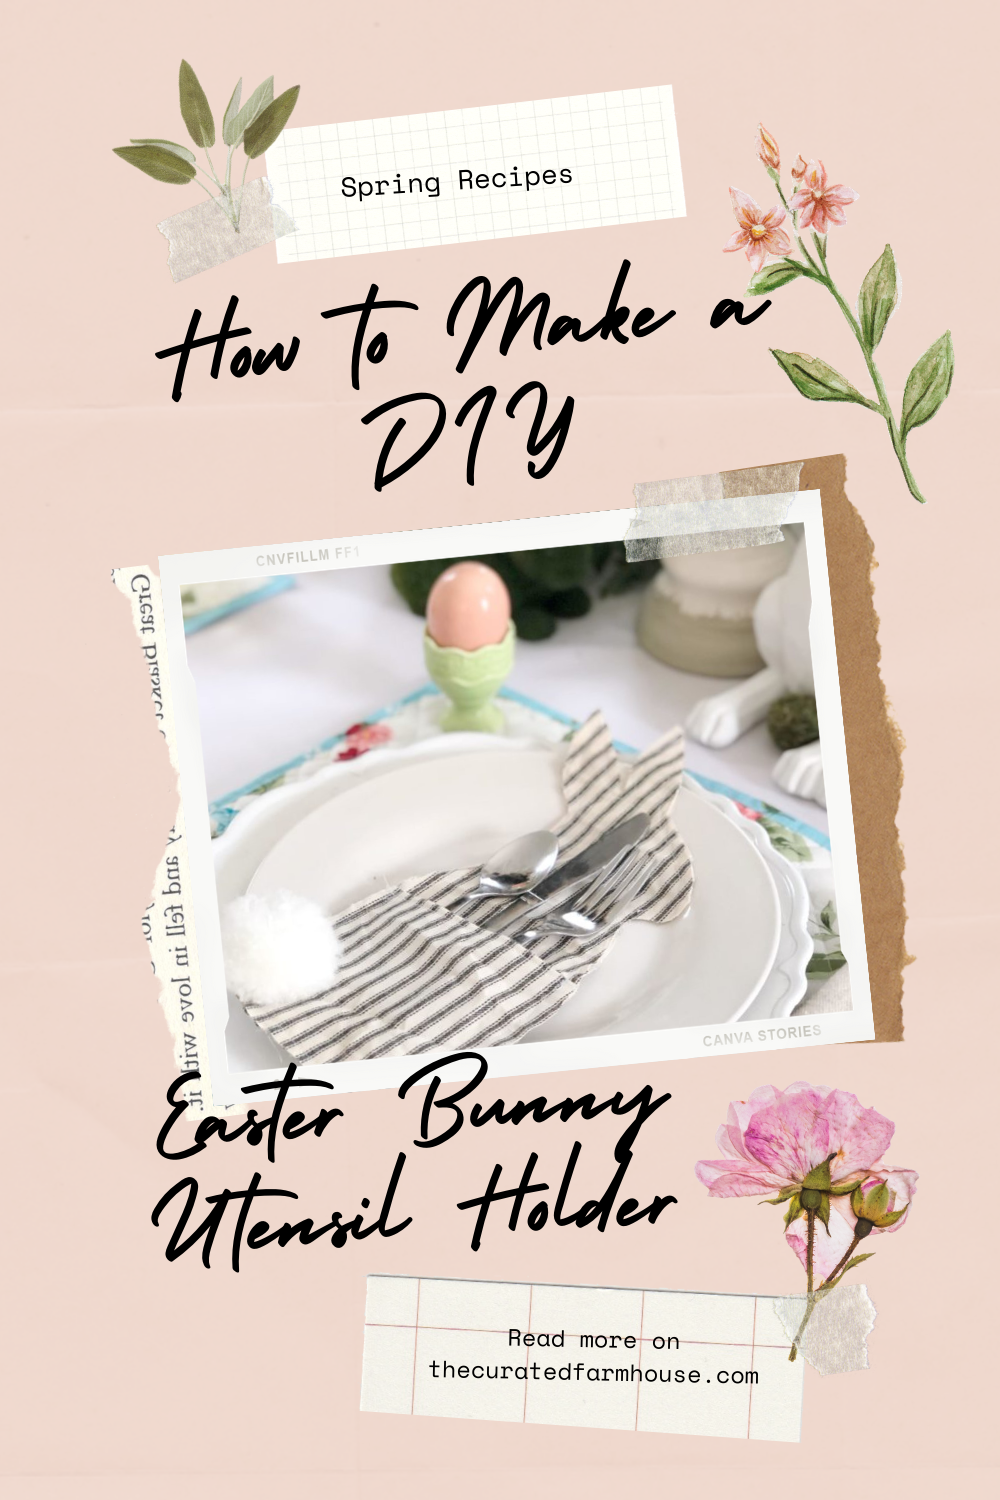 How to Make a DIY Easter Bunny Utensil Holder